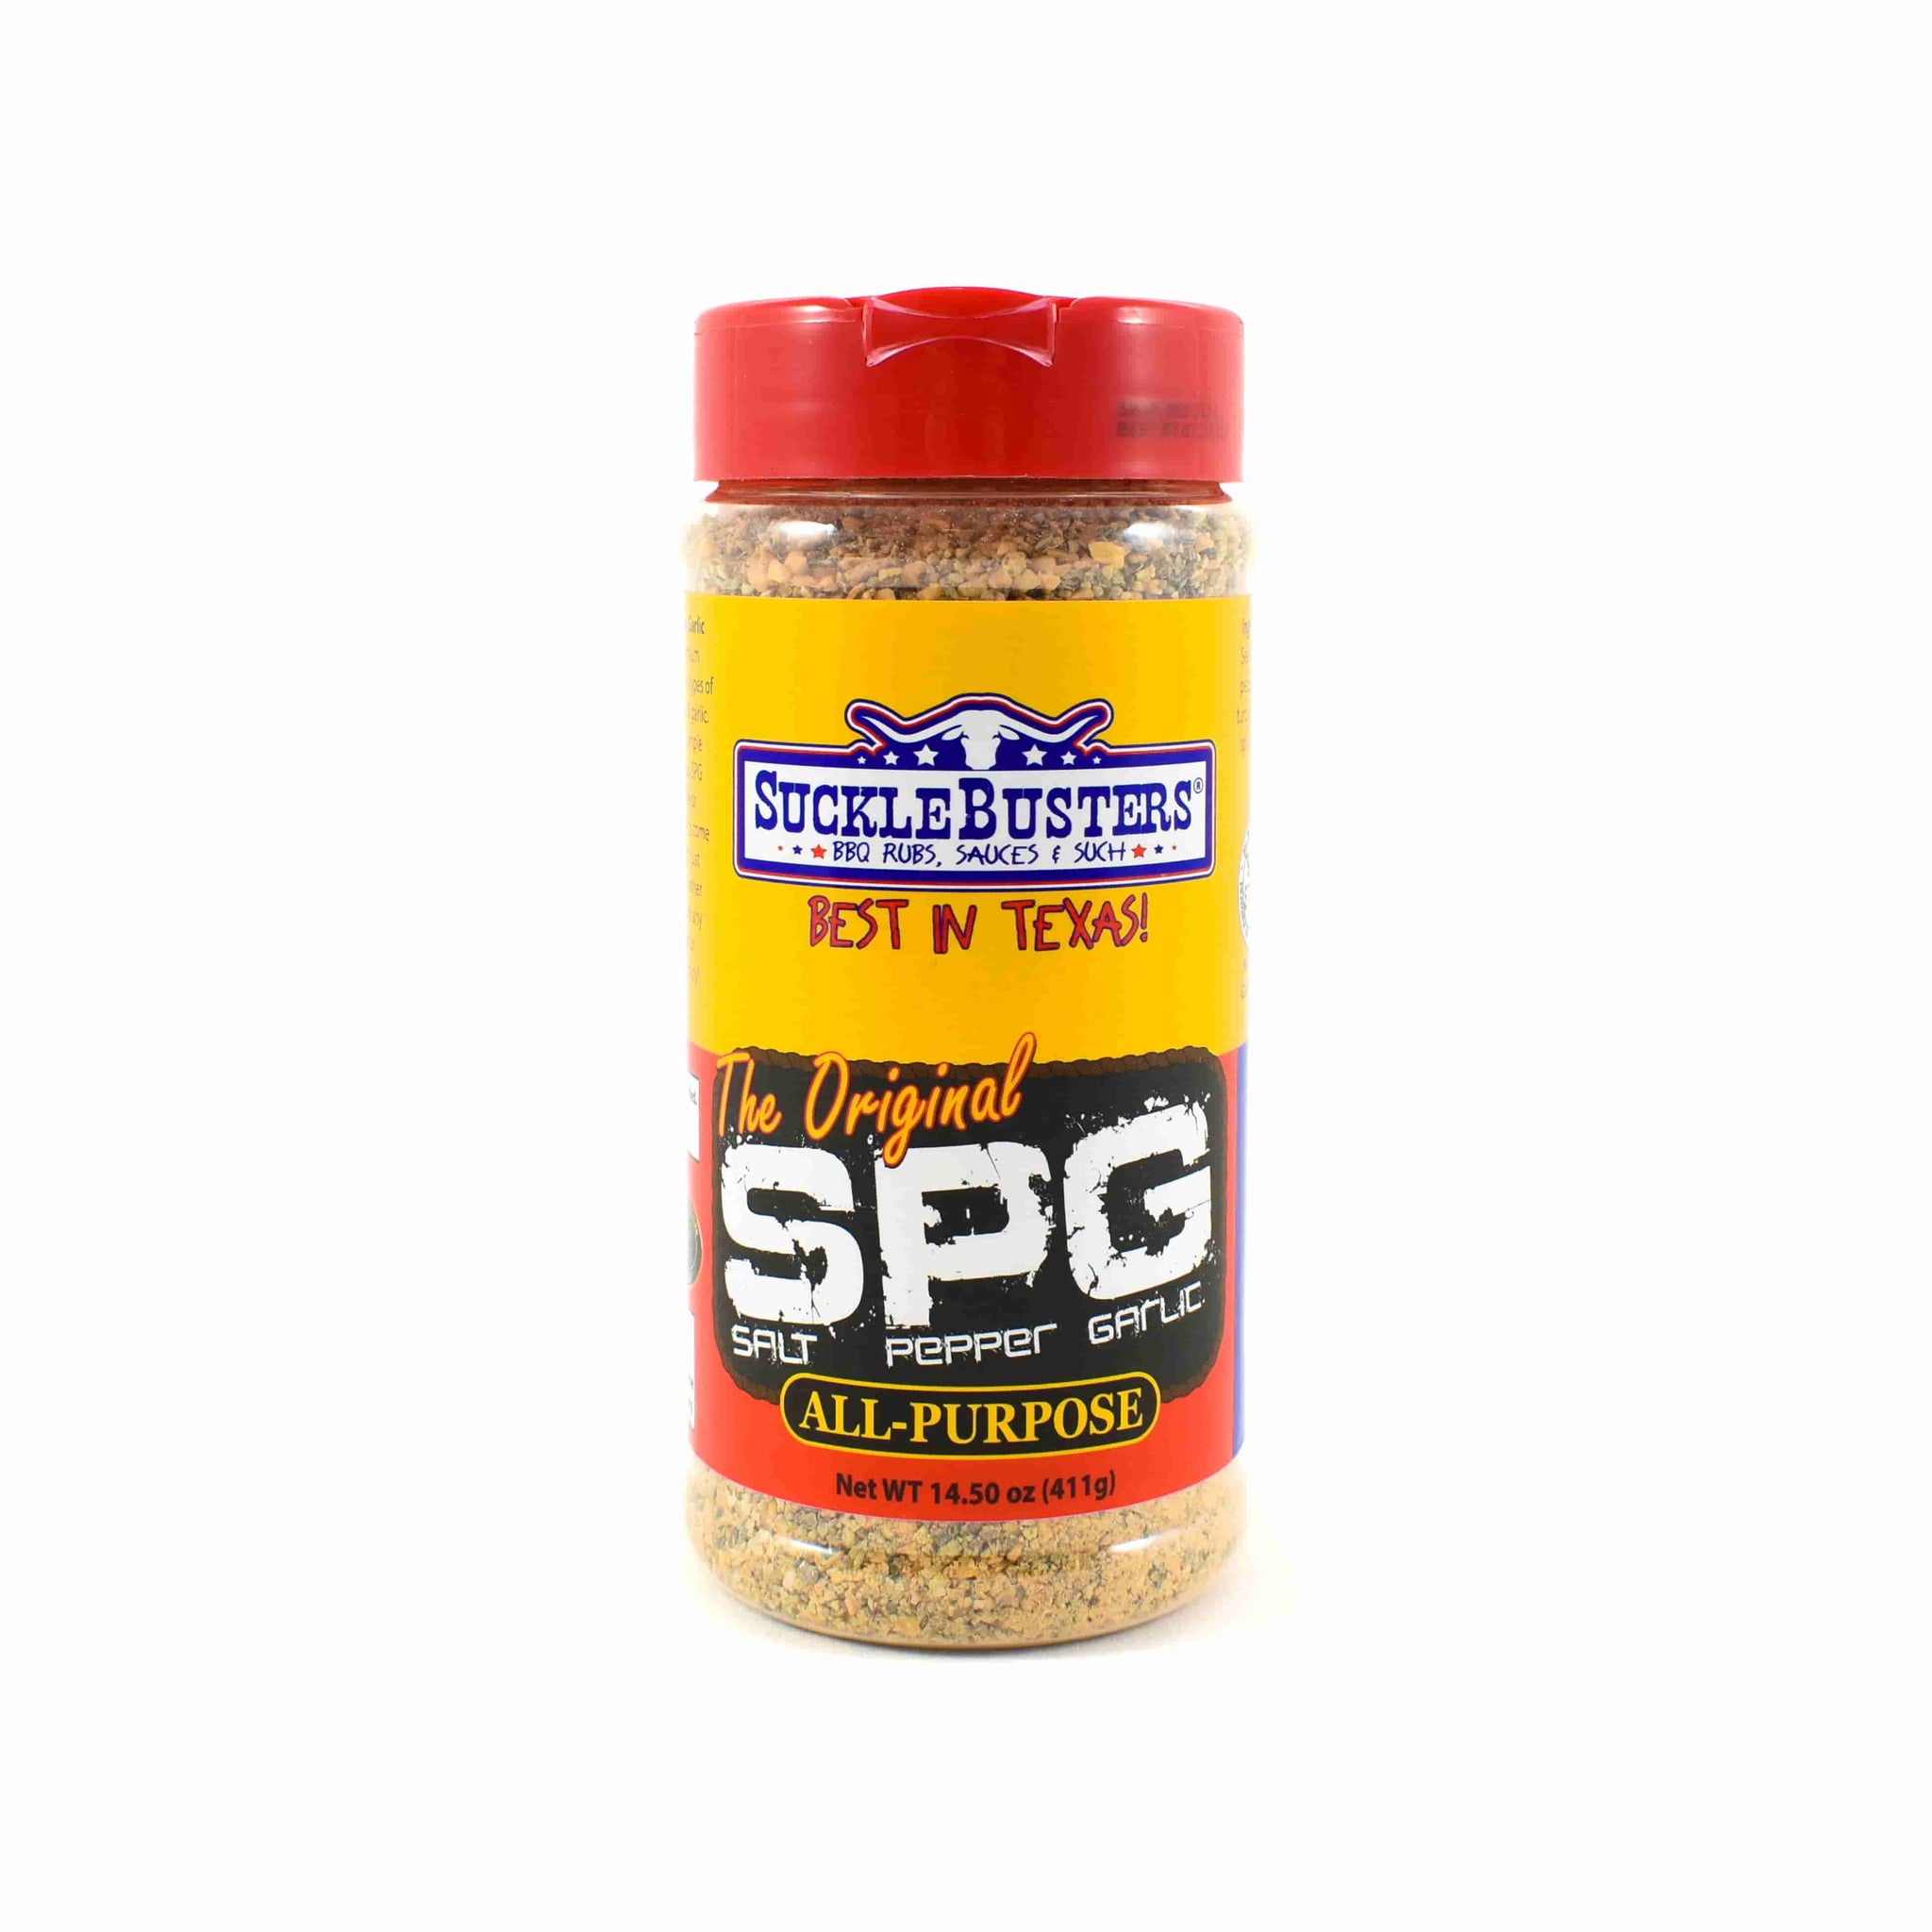 Sucklebusters Salt Pepper Garlic Seasoning 411g